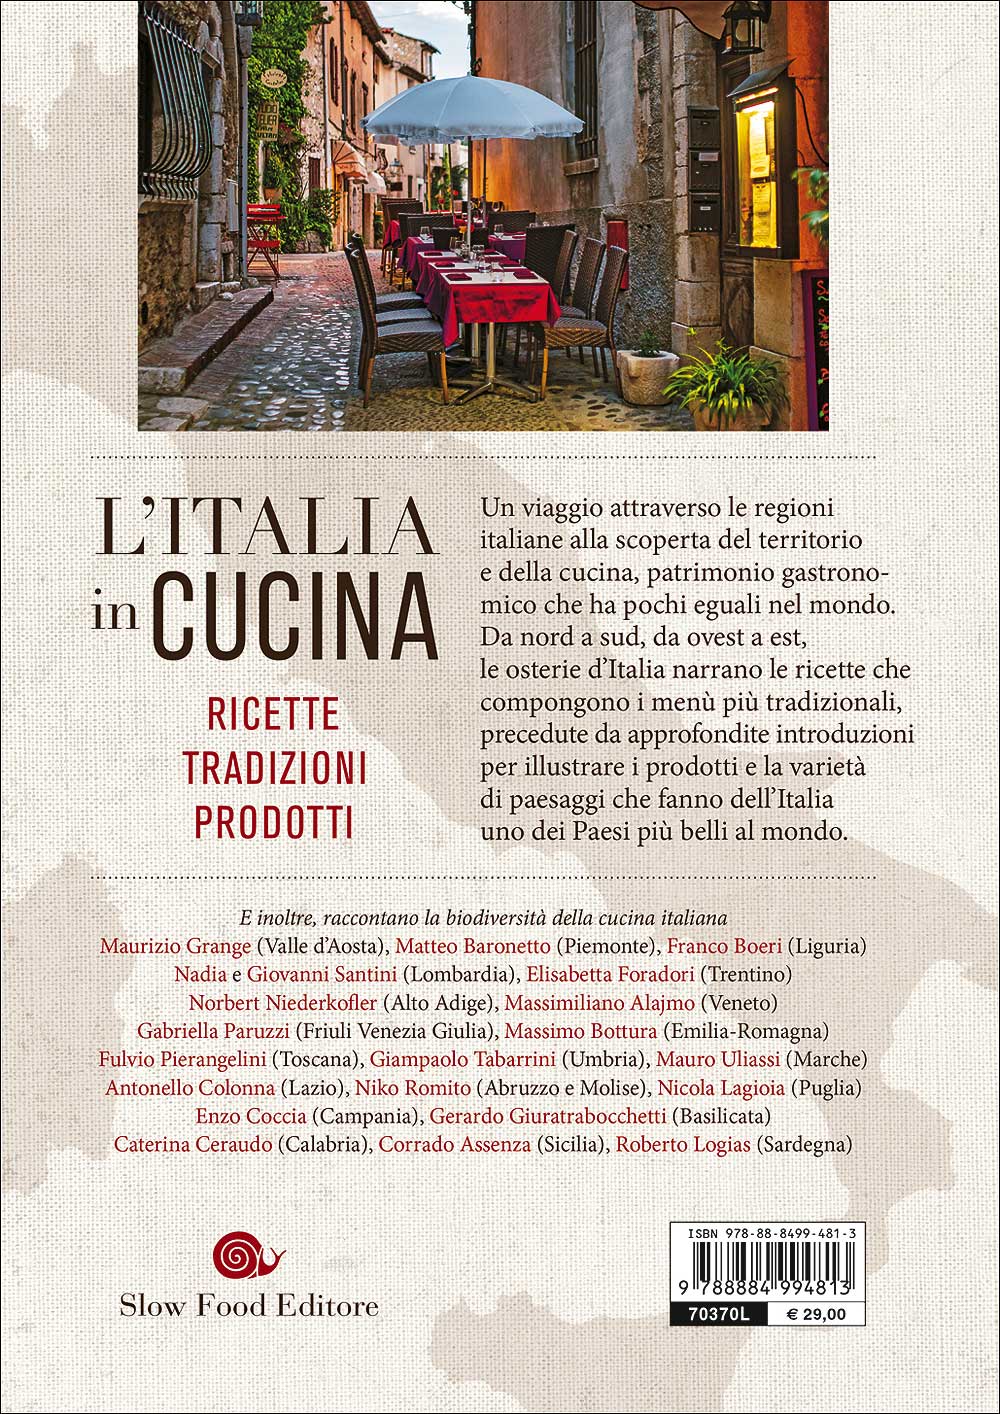 L'Italia in cucina::Ricette, tradizioni, prodotti